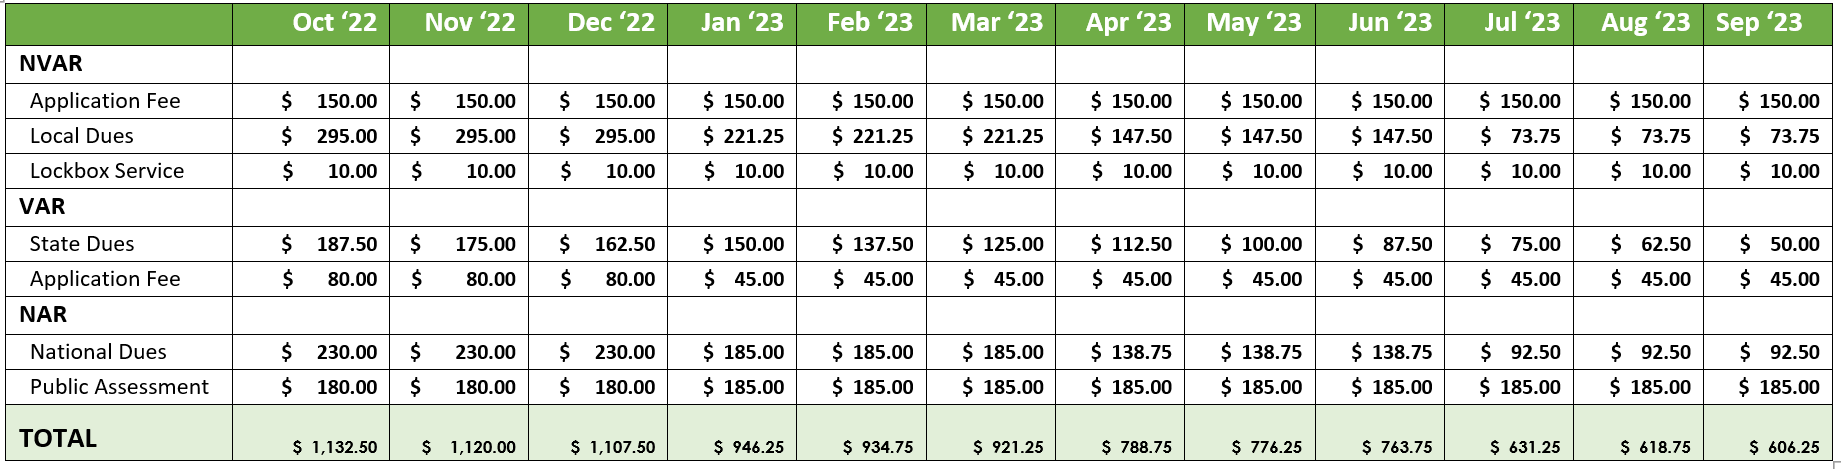 updated 2023 pricing calendar